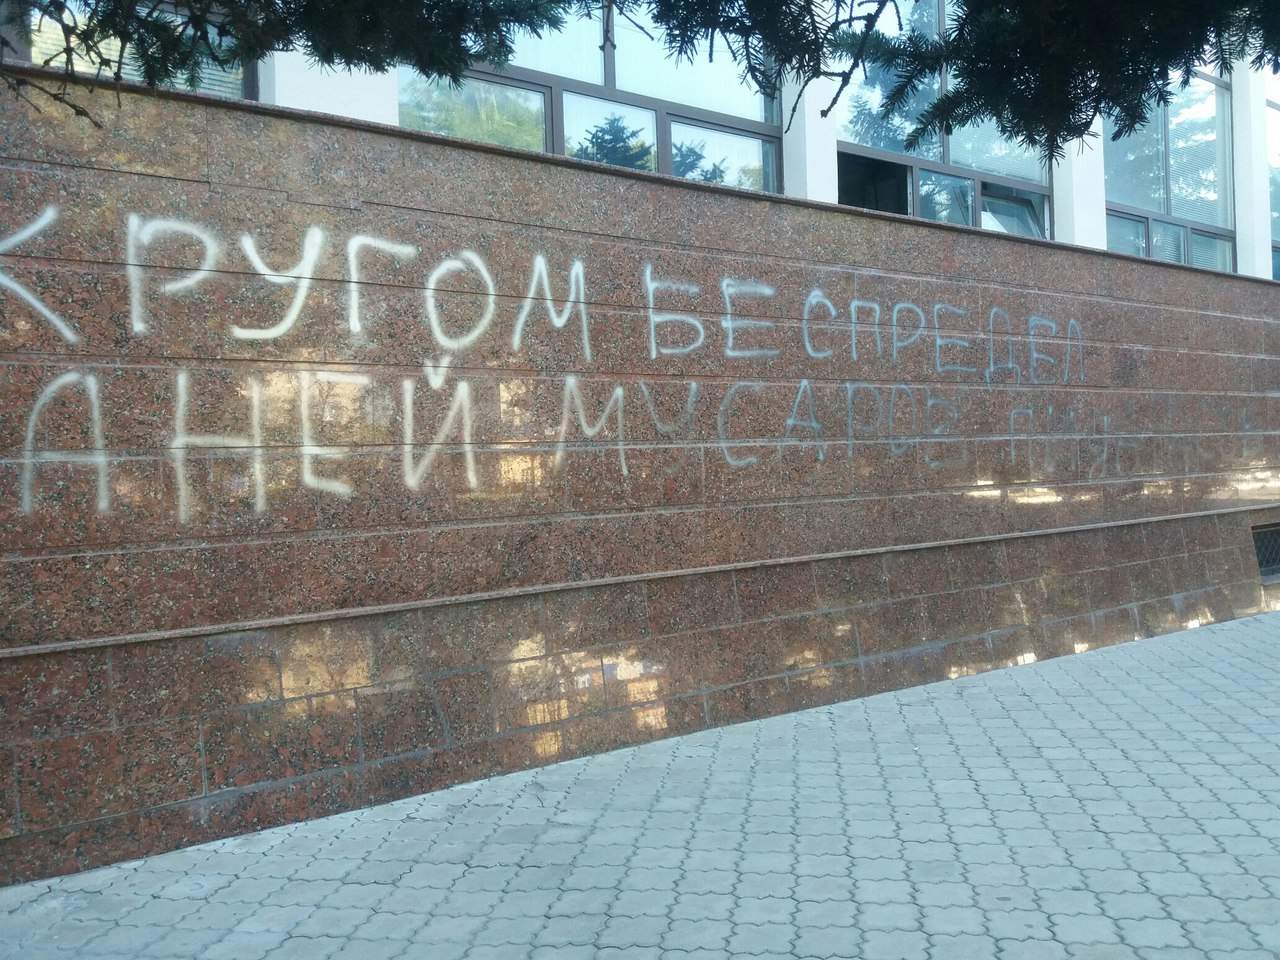 В Измаиле неизвестные оставили провоцирующую надпись в адрес циганей, полицейских и геев (фото)